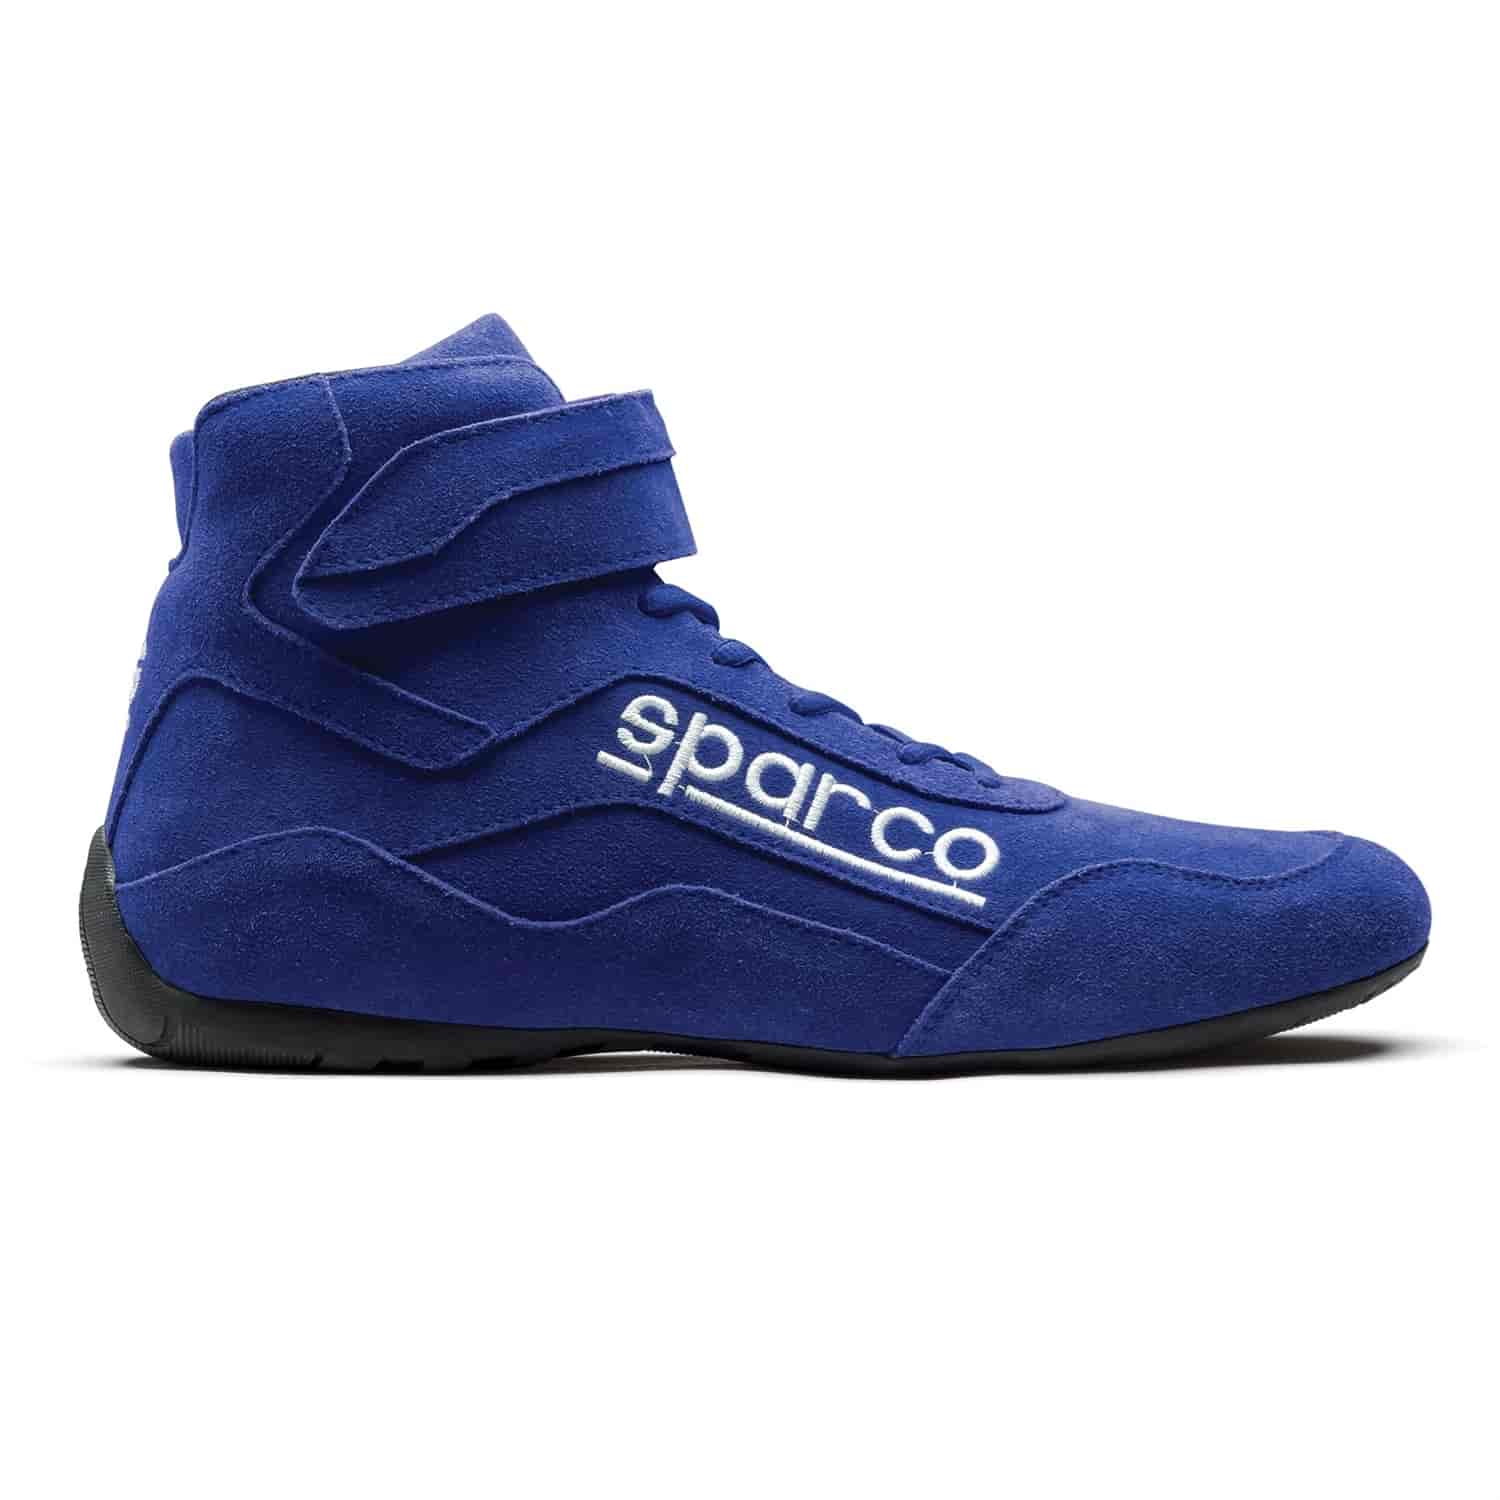 Race 2 Shoe Size 11 - Blue